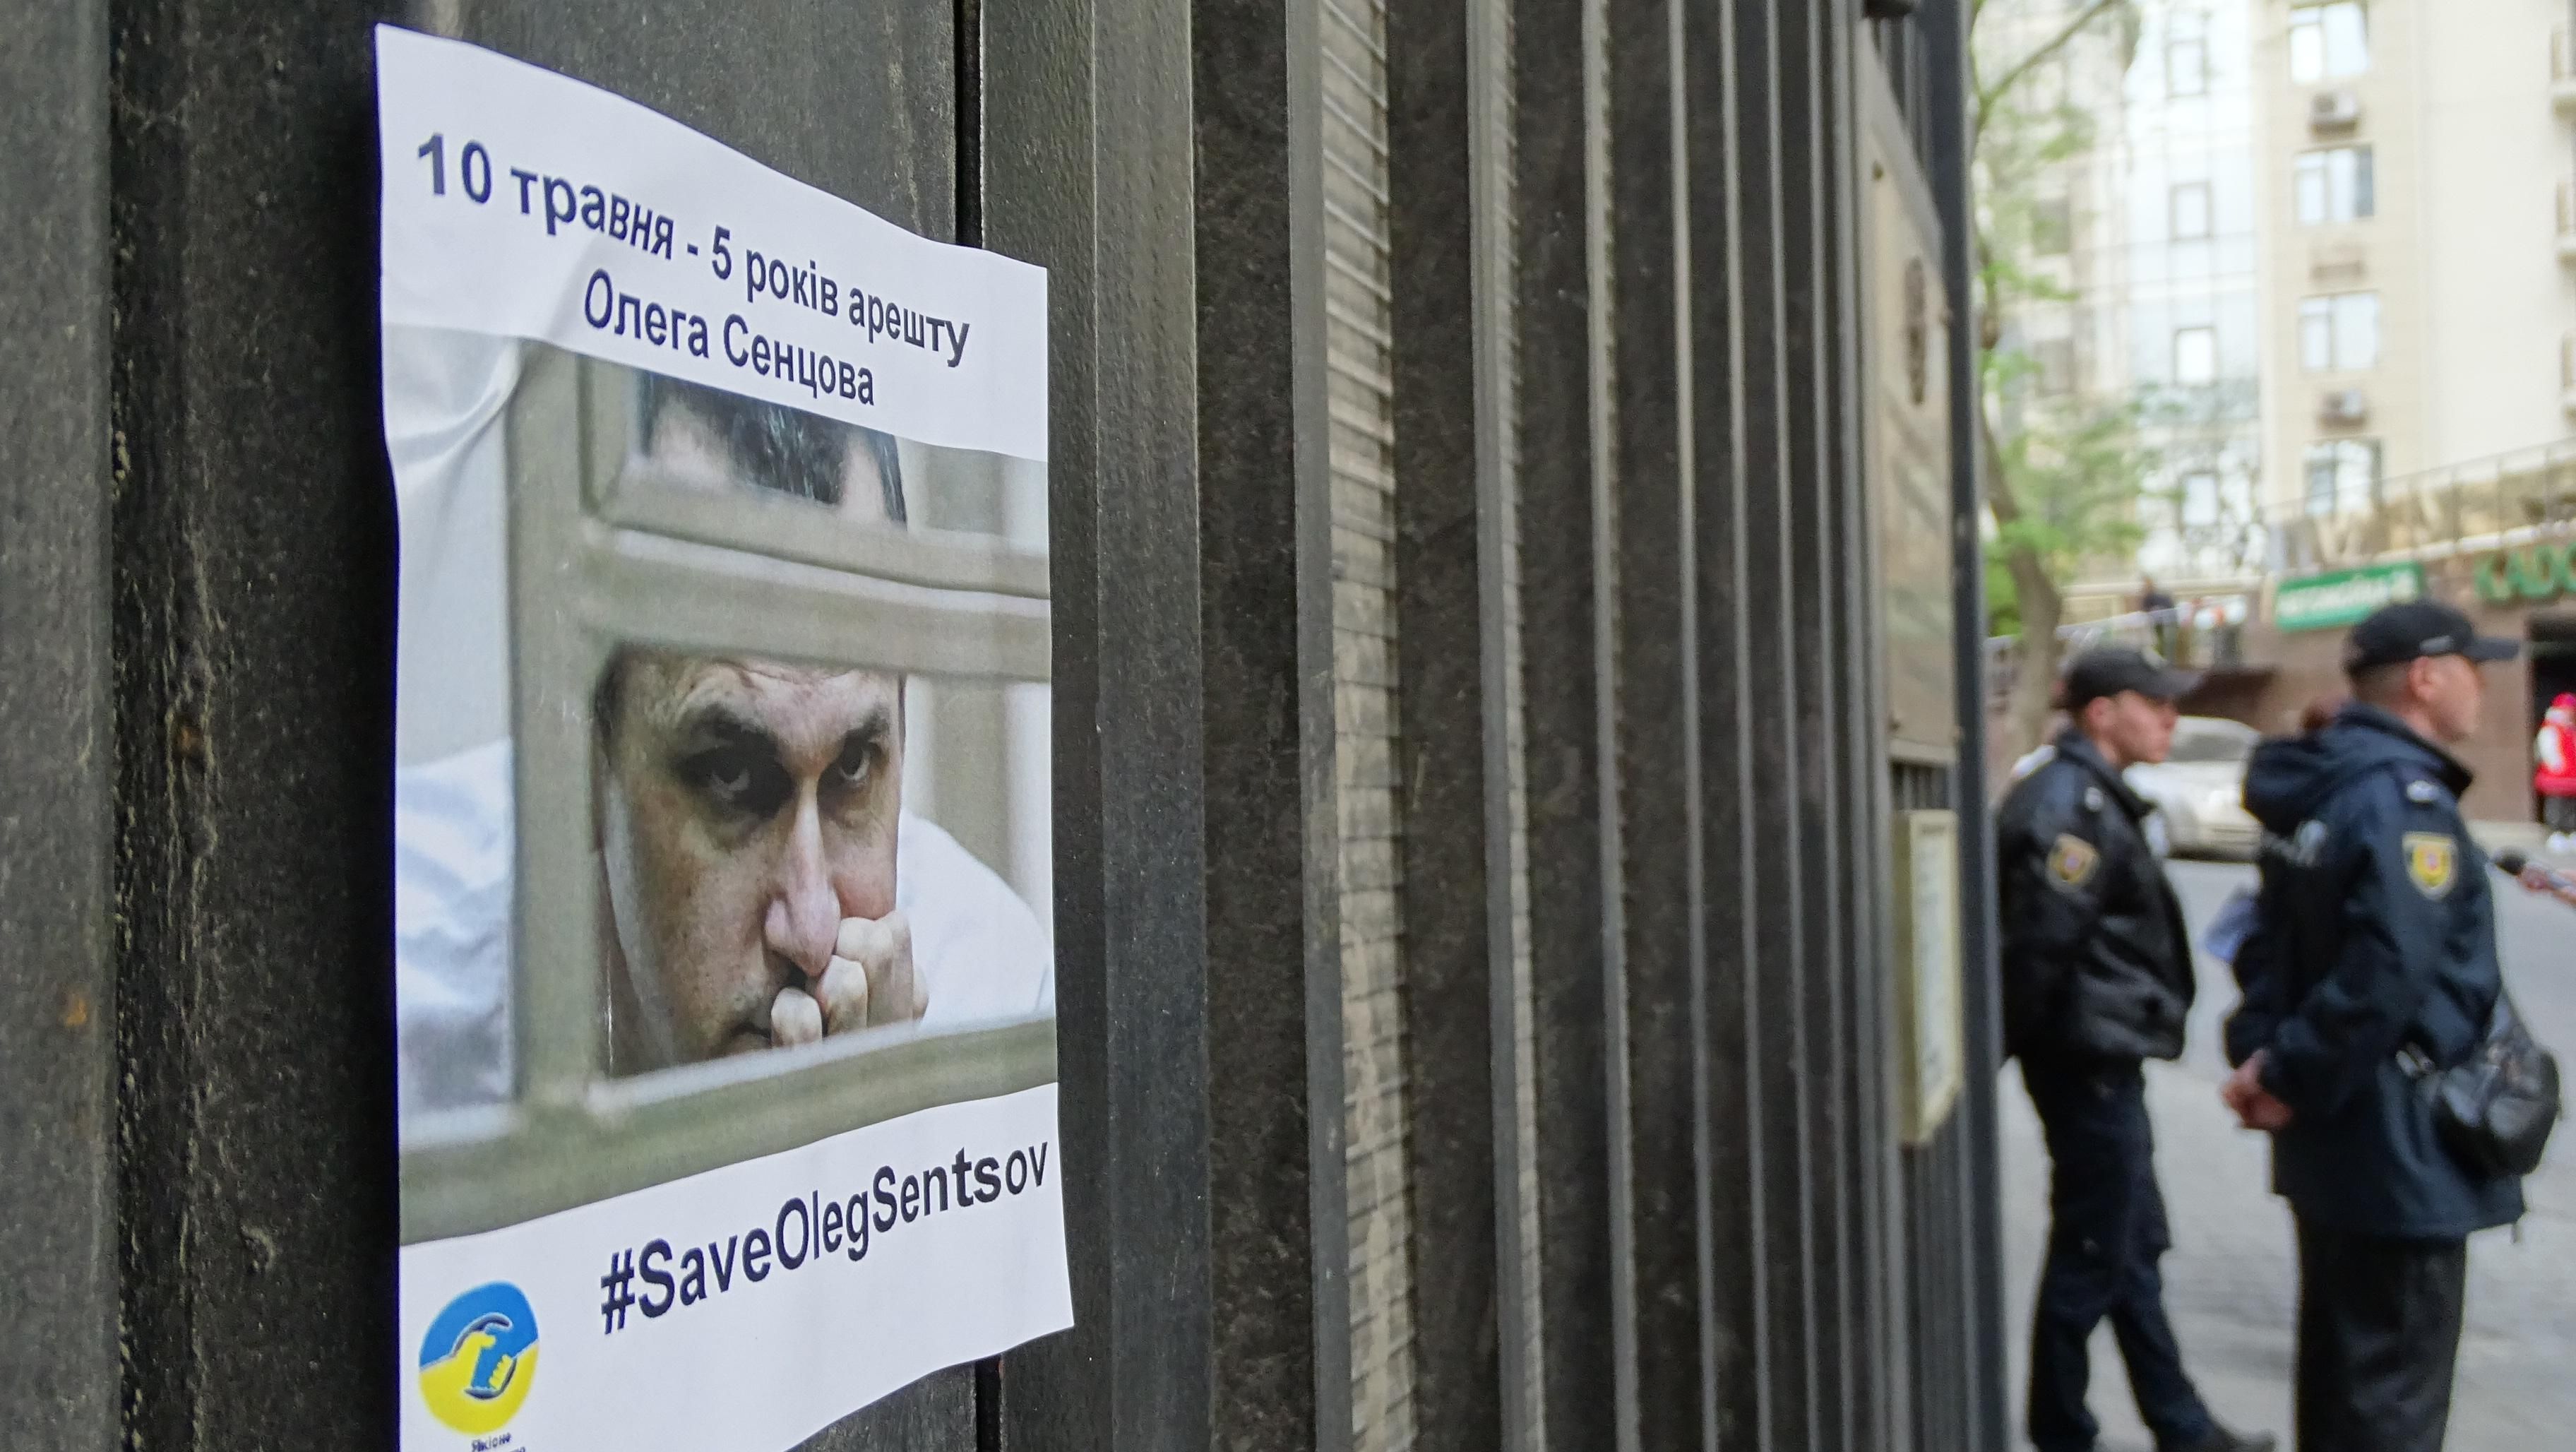 Як протестували проти ув'язнення Сенцова під консульством РФ в Одесі: емоційні фото